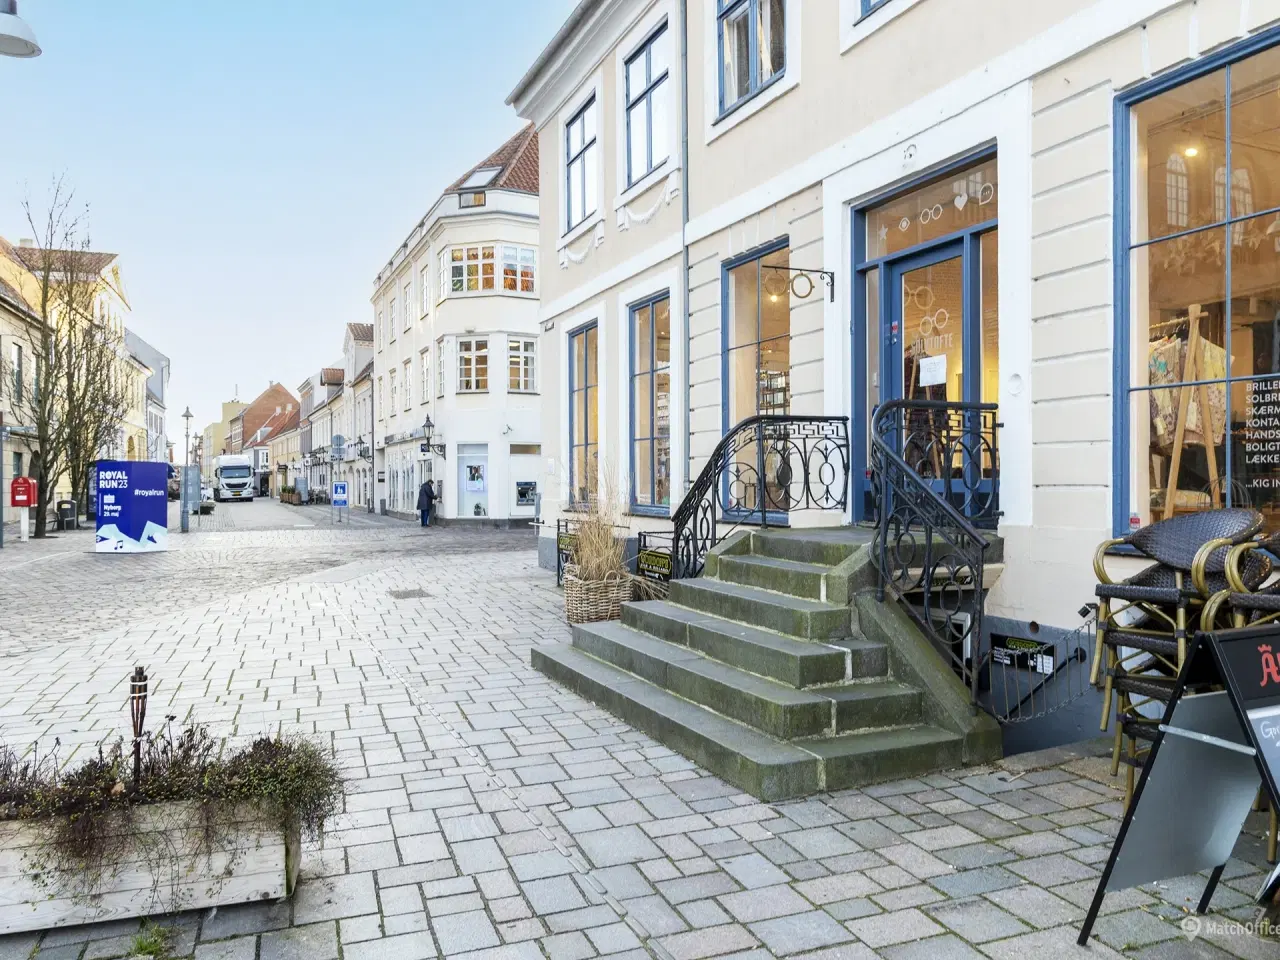 Billede 1 - Sjældent udbudt ejendom i Nyborg